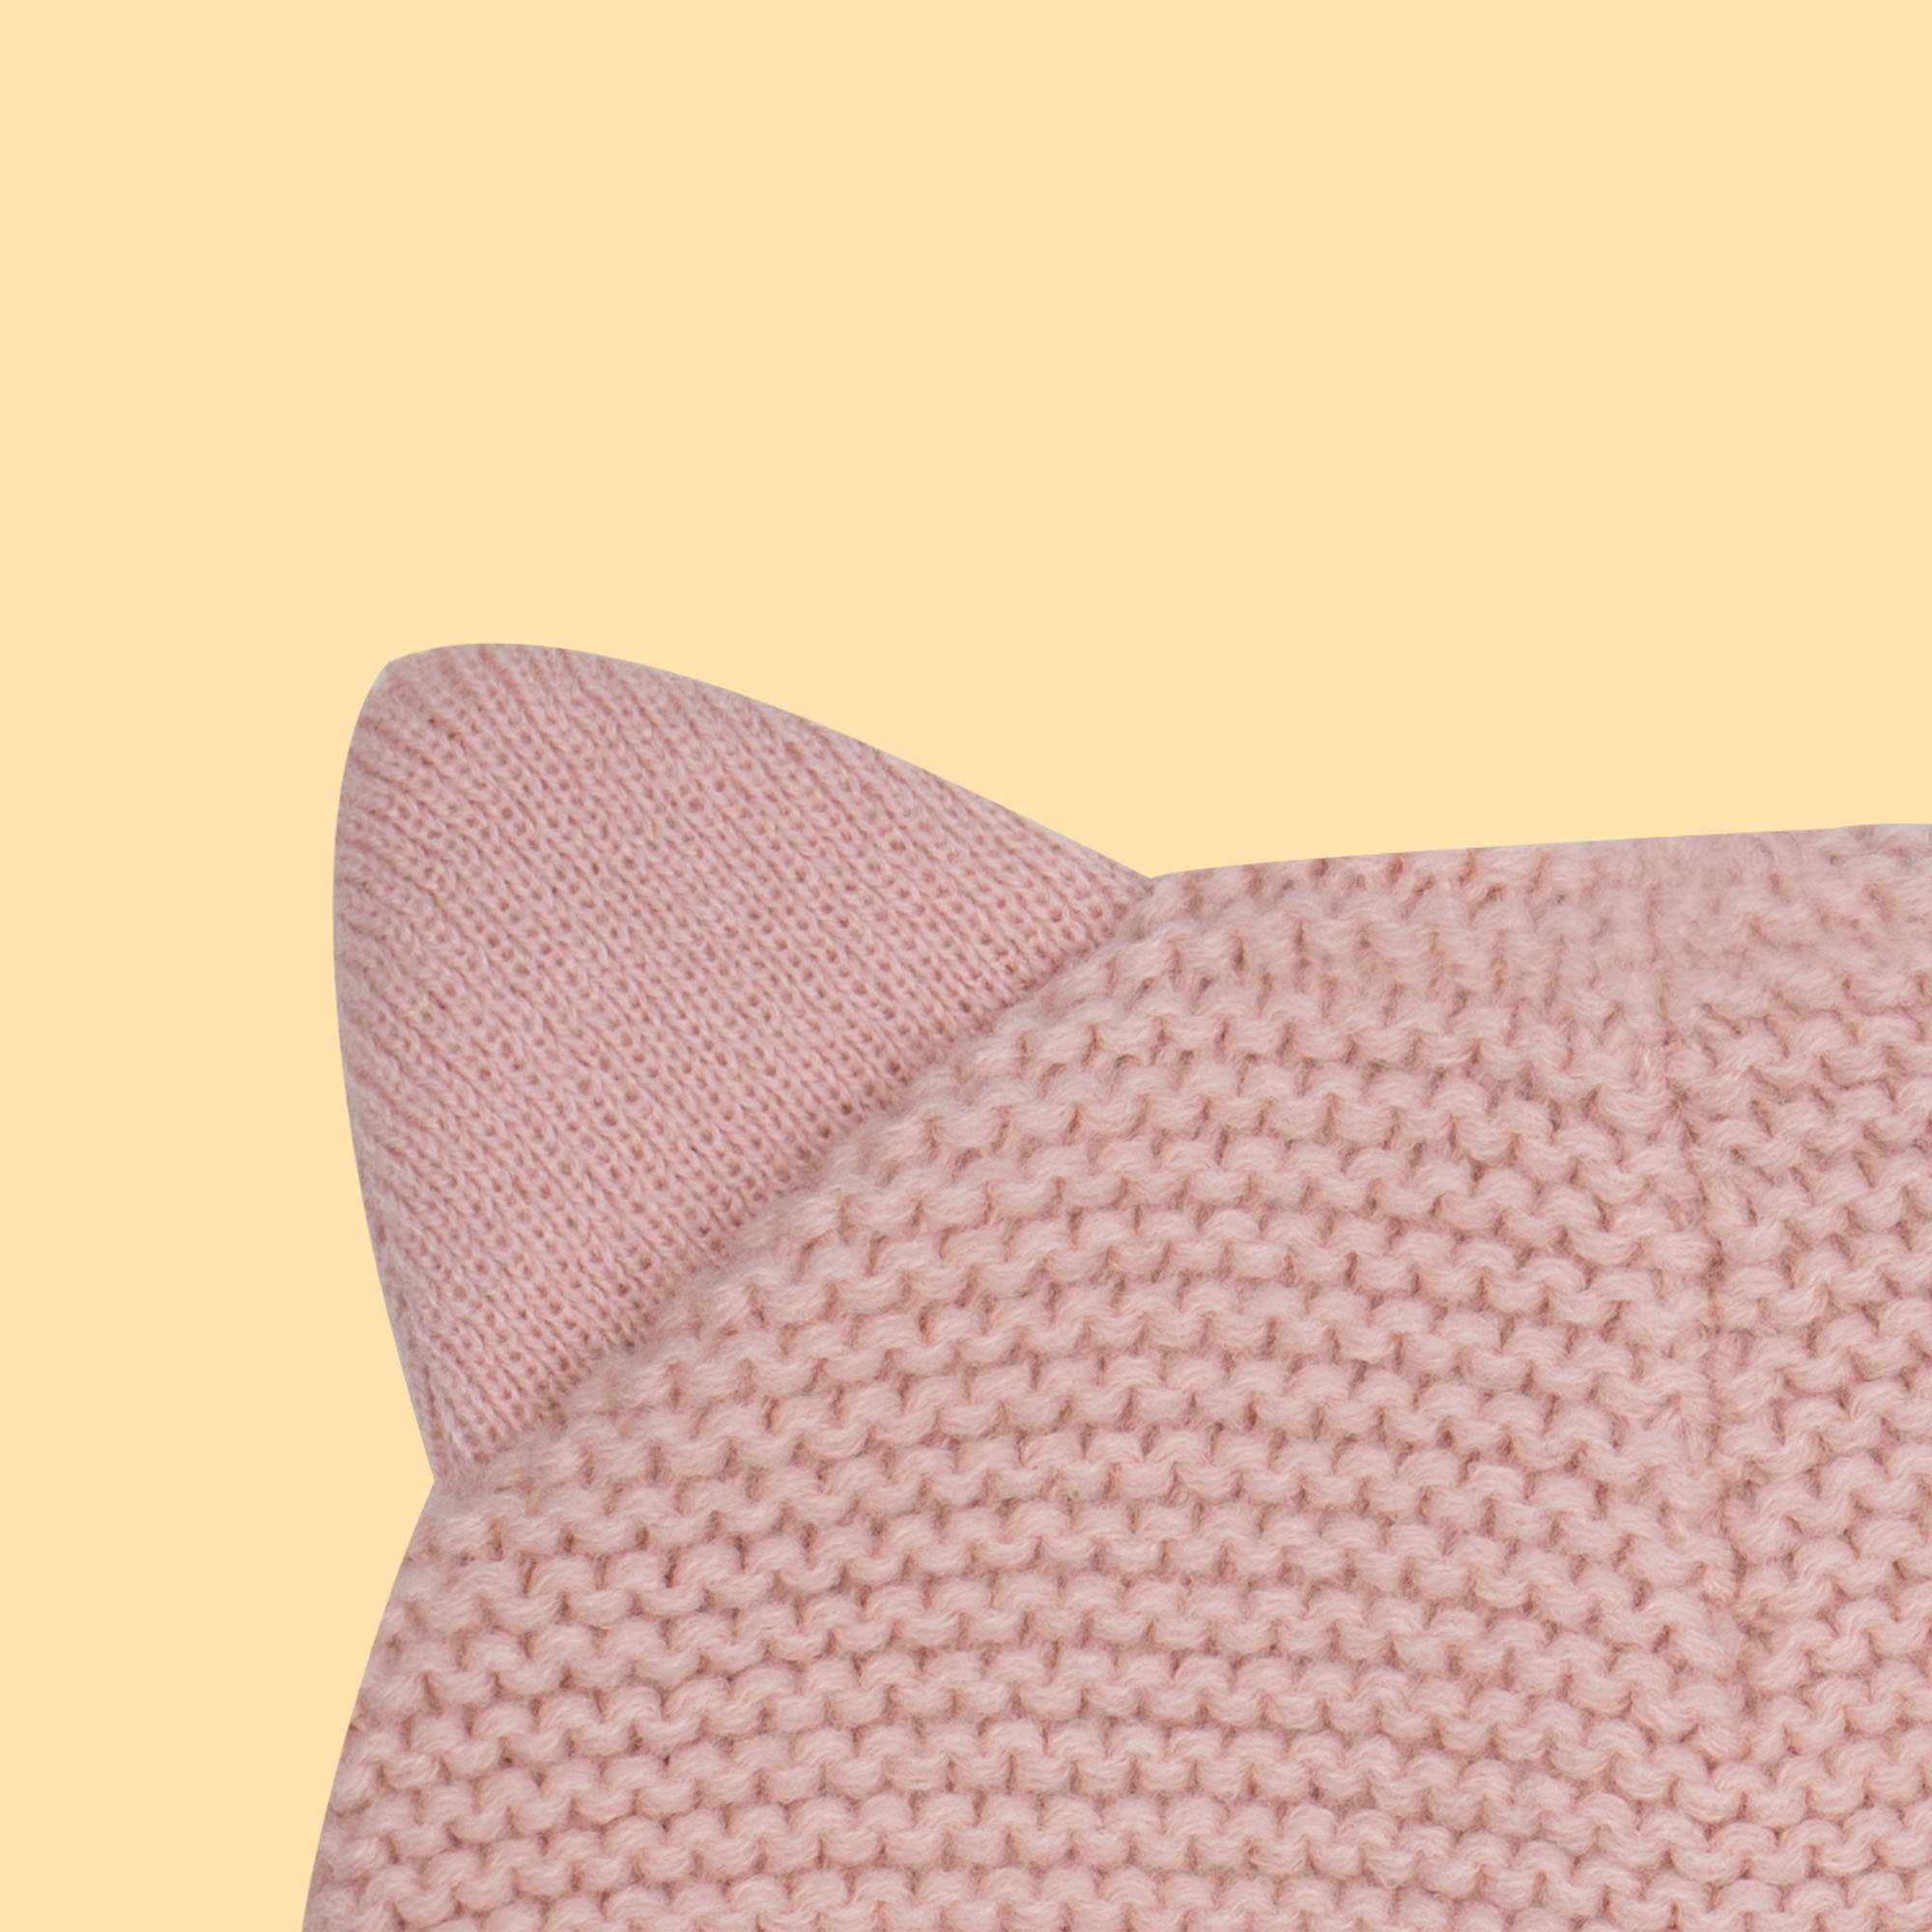 Mawi cappello  orecchiette  gatto - Mawi